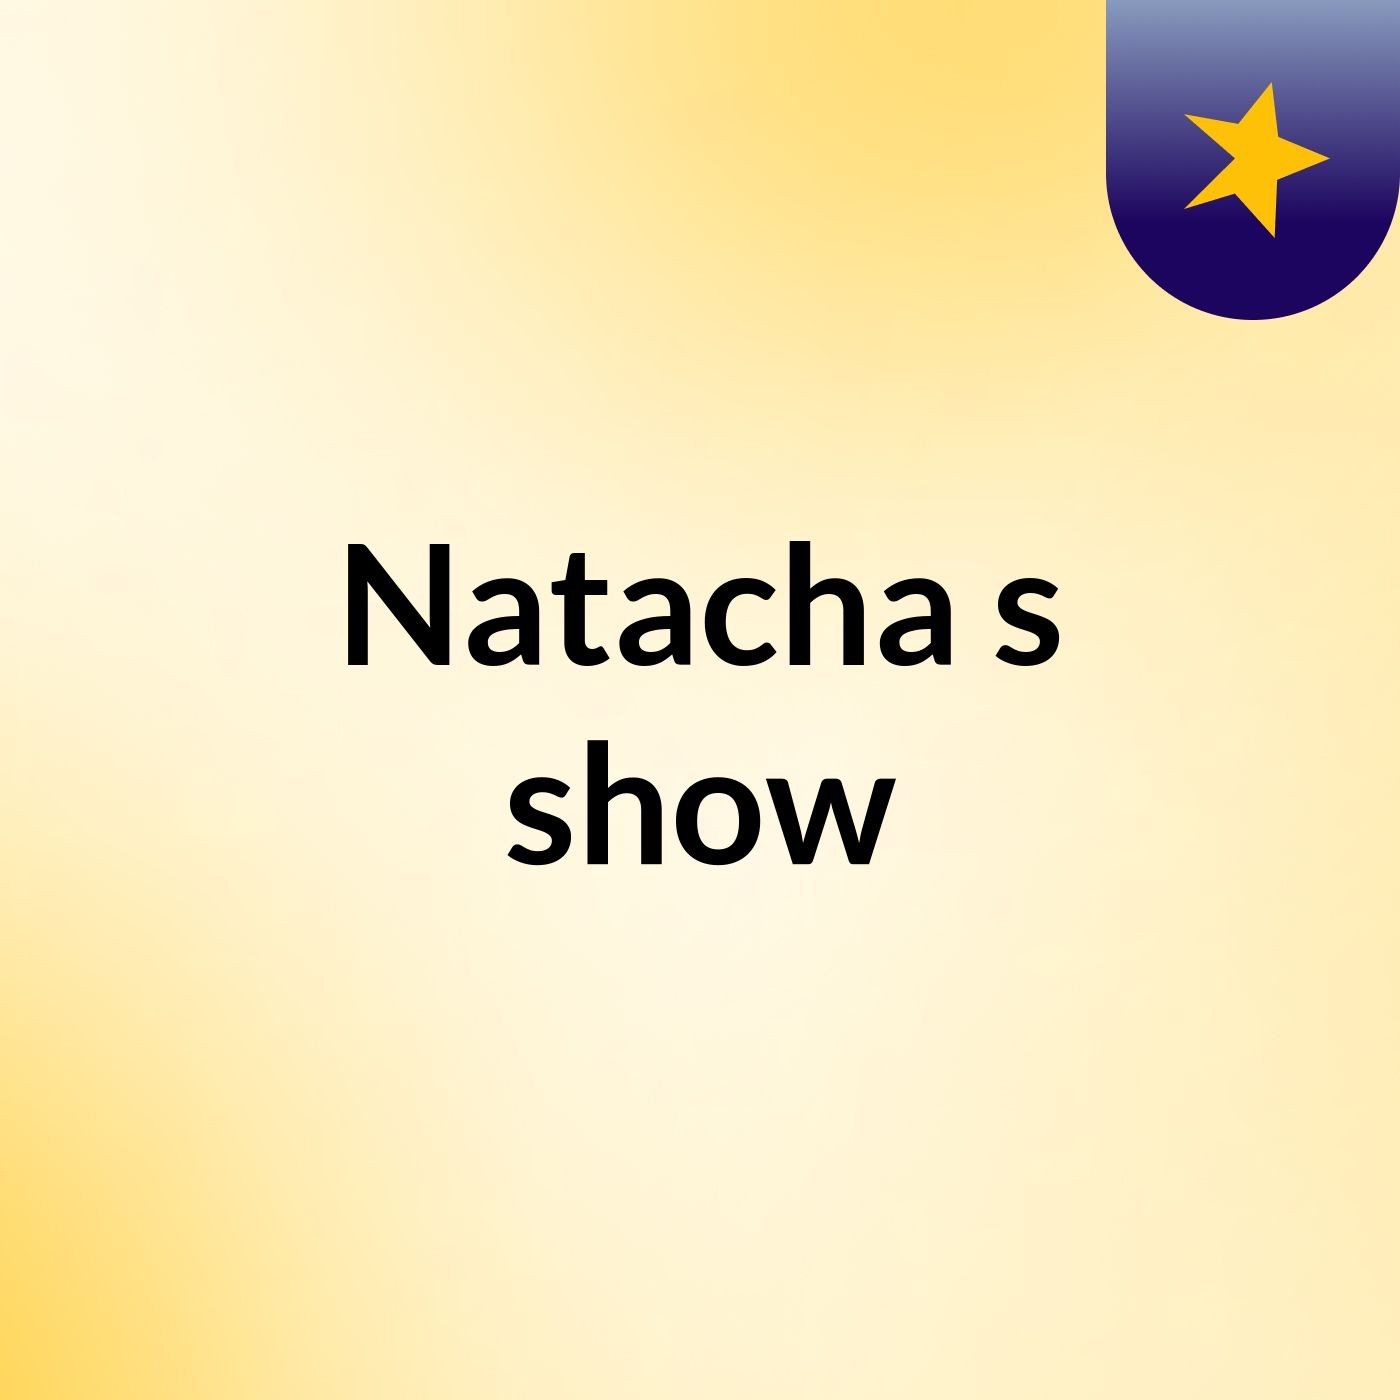 Natacha's show